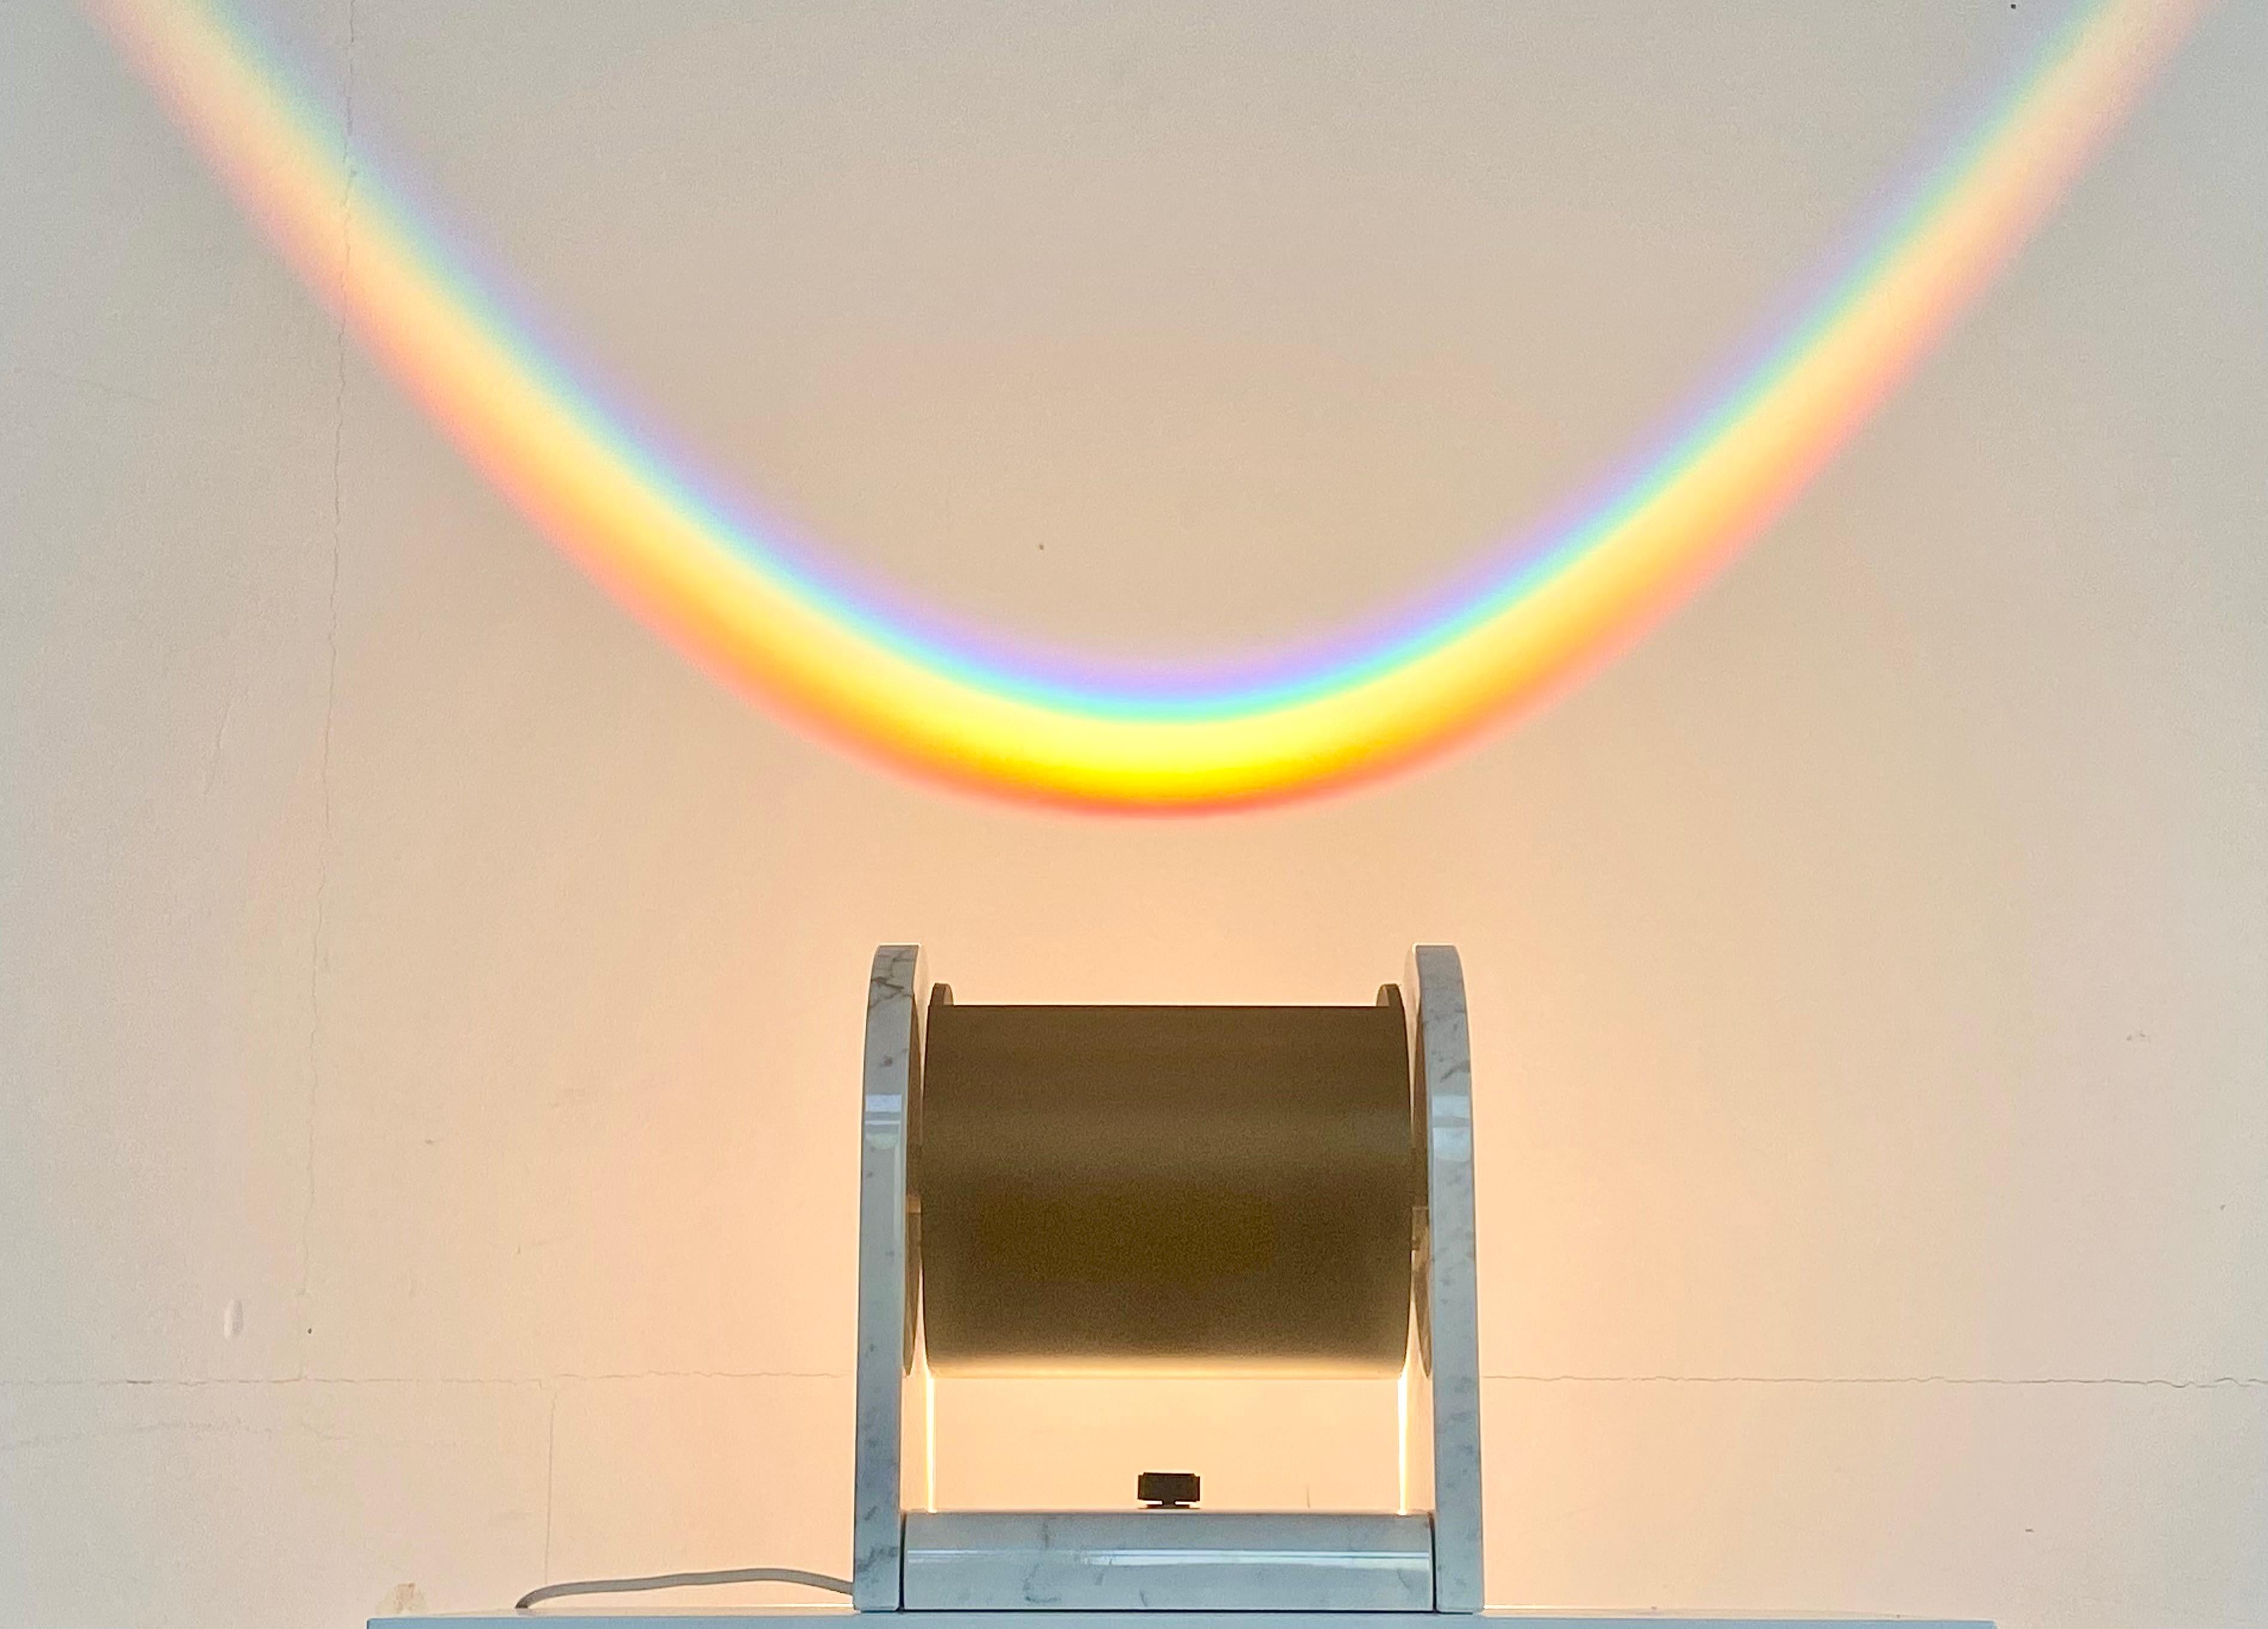 Studio Alchimia Arc-en-Ciel Lampe, entworfen von Andrea Belossi im Jahr 1979.

Nach der Sonne kommt der Regen: Ein wunderbares Beispiel für die postmoderne Beleuchtung ist die Arc-en-Ciel-Lampe, die von Andrea Belossi für Studio Alchimia entworfen